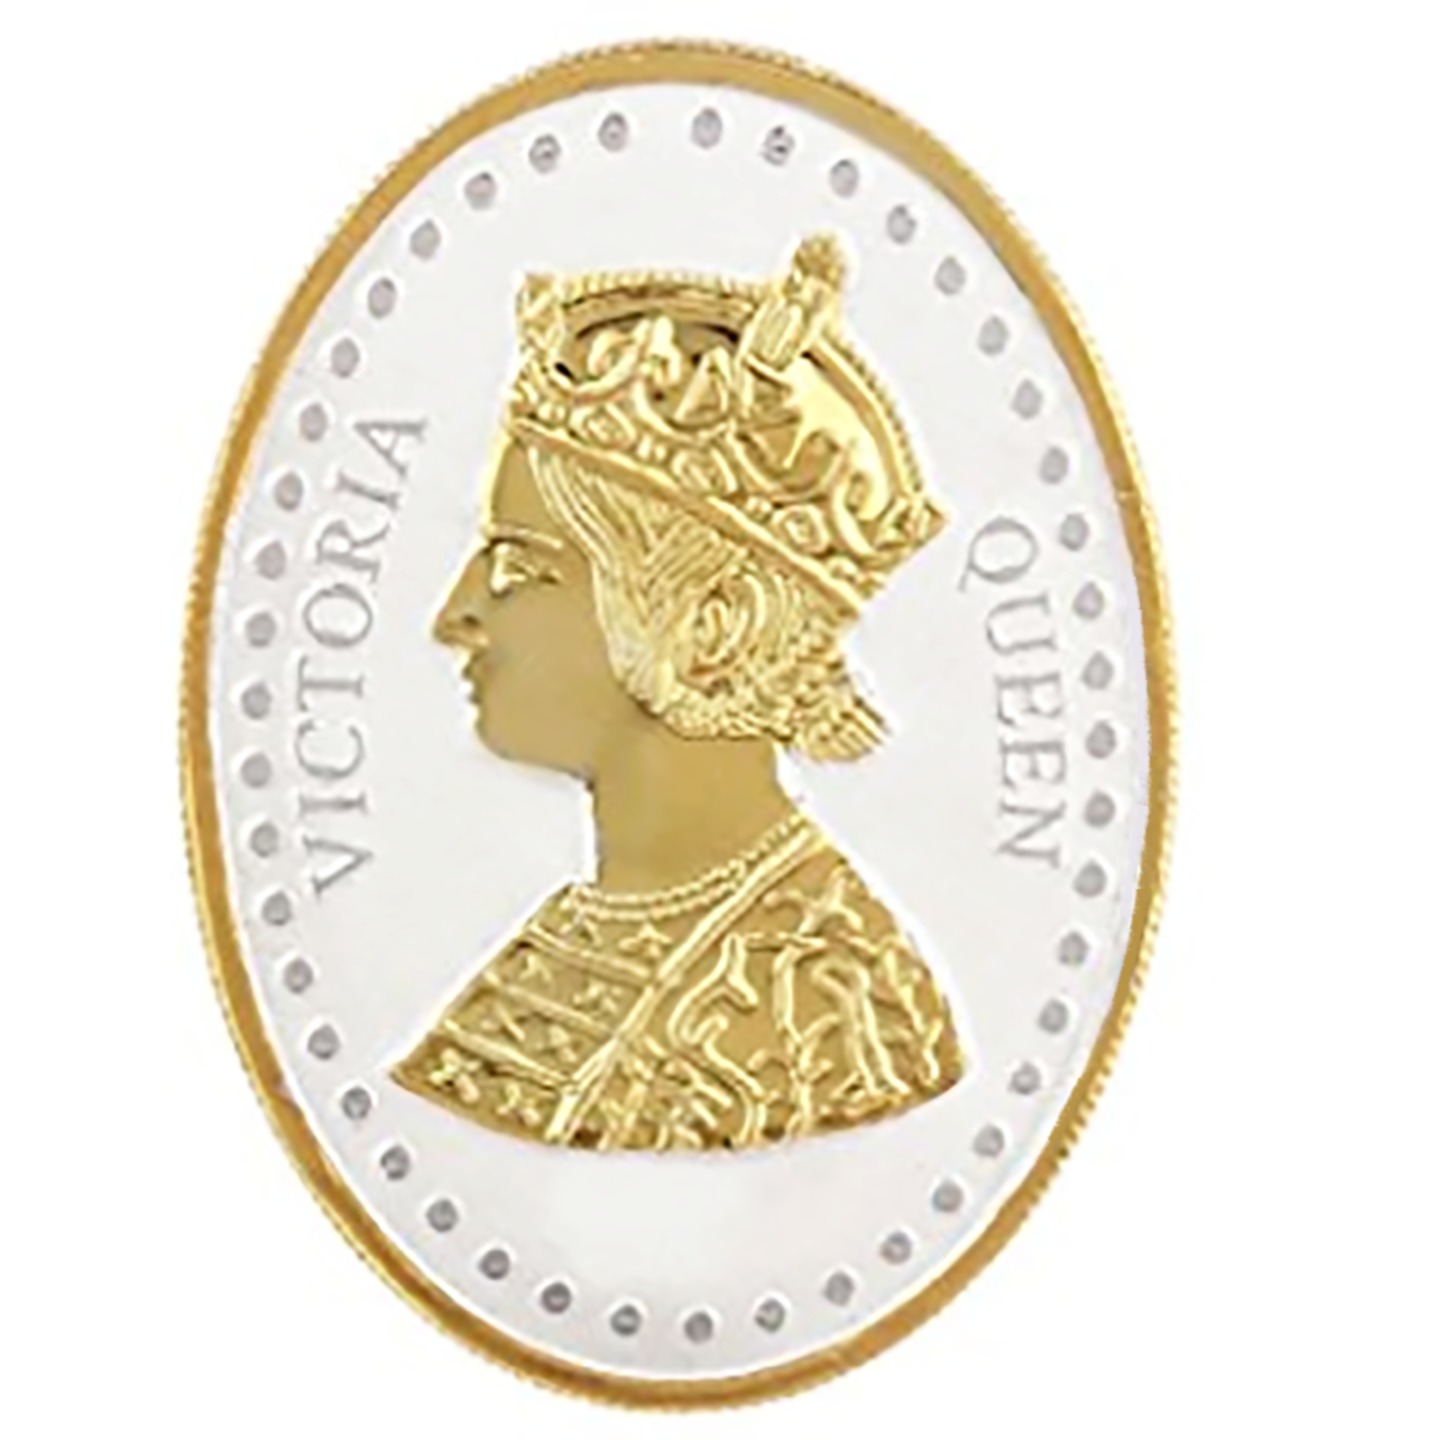 Silver Coin Queen Victoria 24 Kt Gold Plated 10 Gm 999 BIS Hallmarked